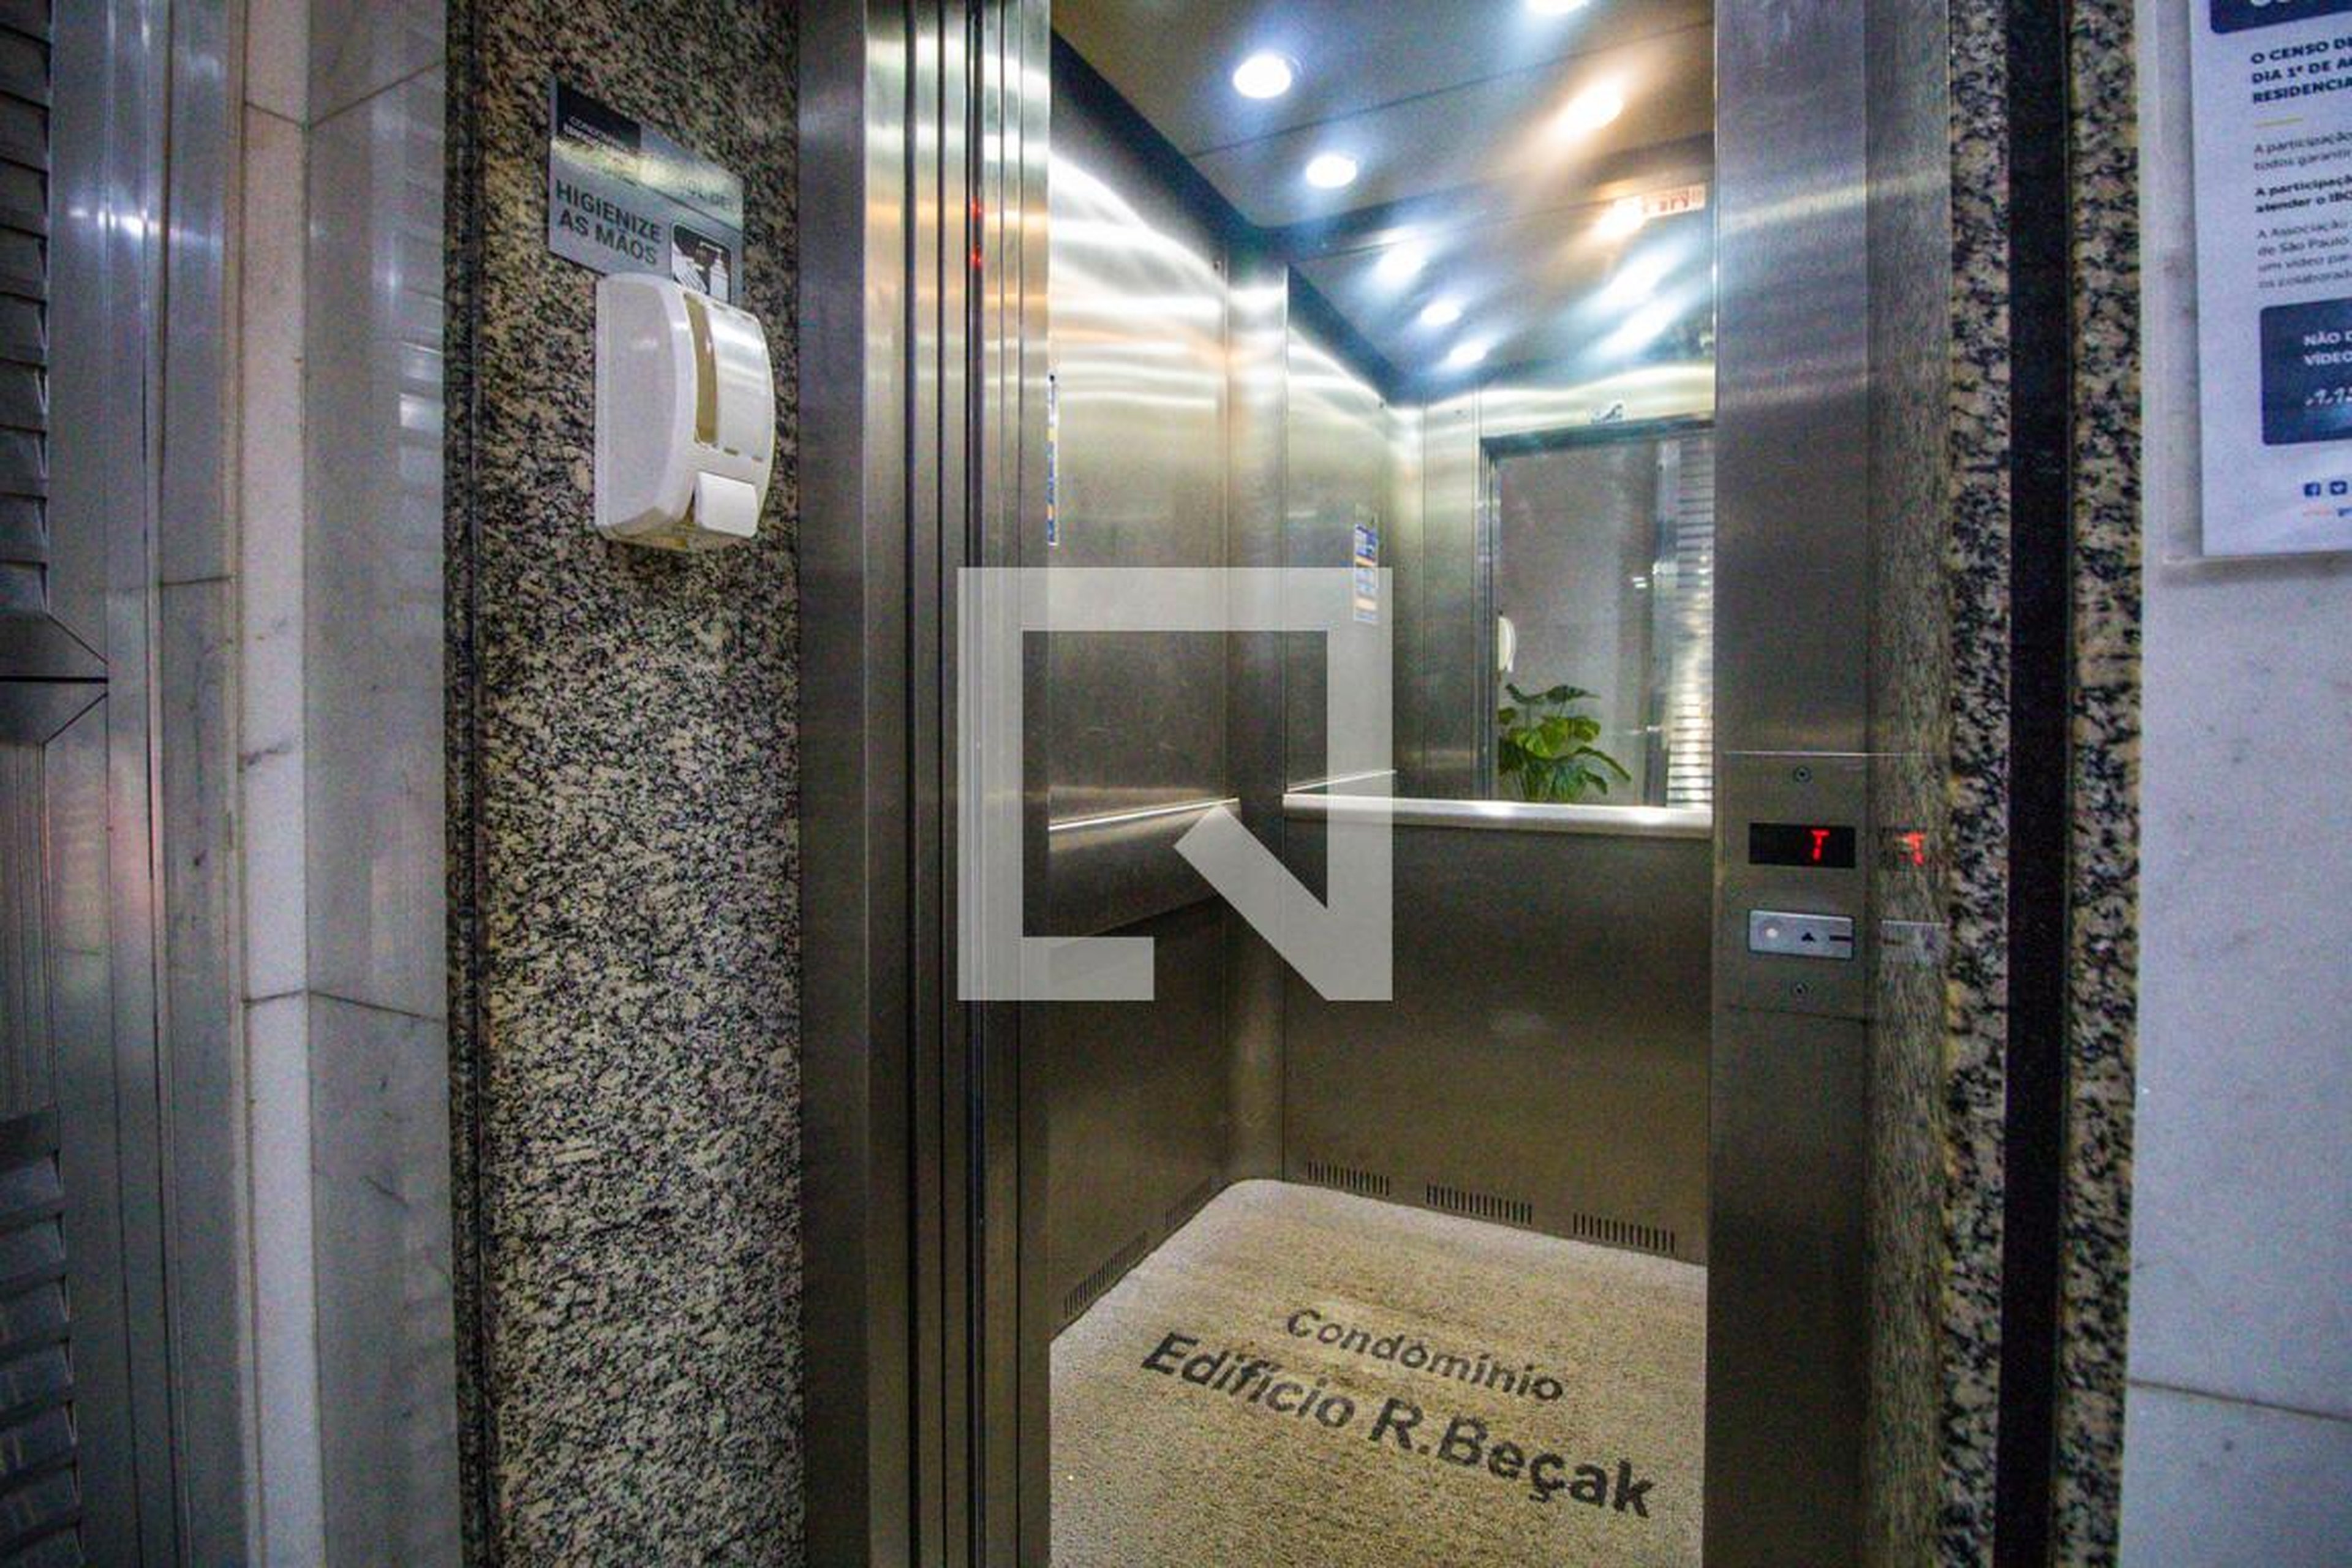 Elevador - Edifício R. Beçak